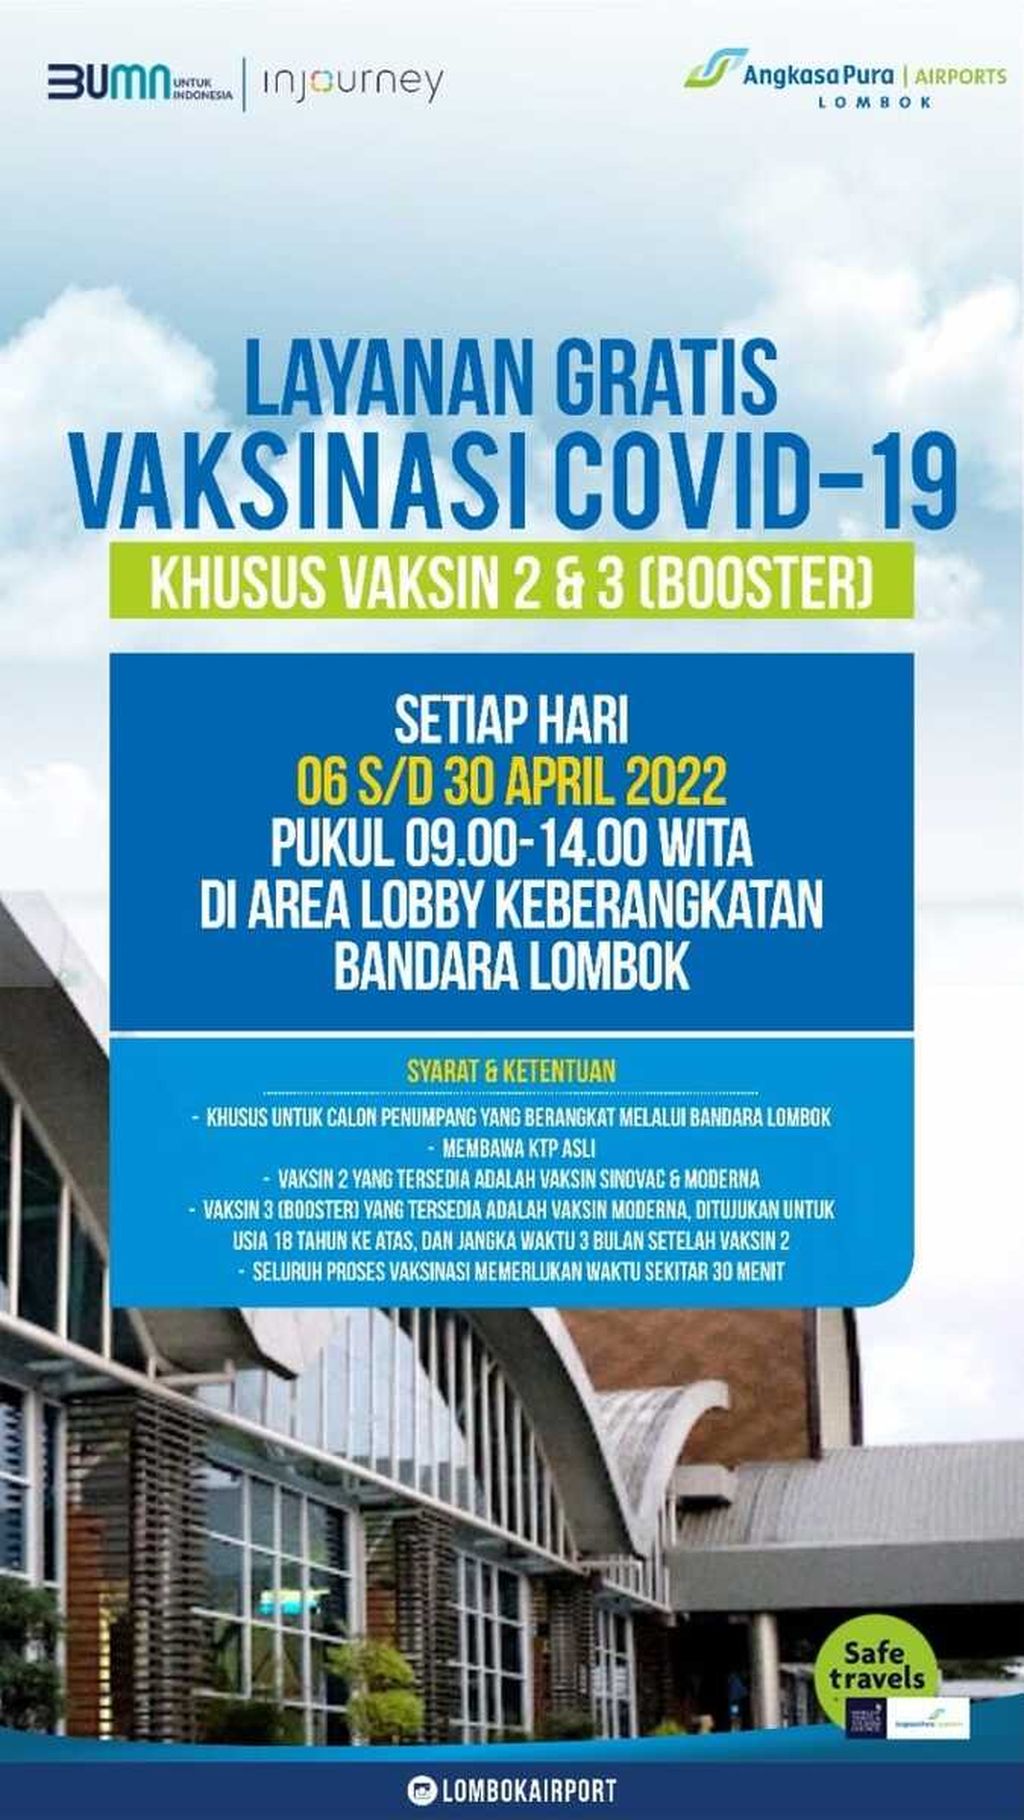 Informasi vaksinasi Covid-19 di Bandara Lombok.